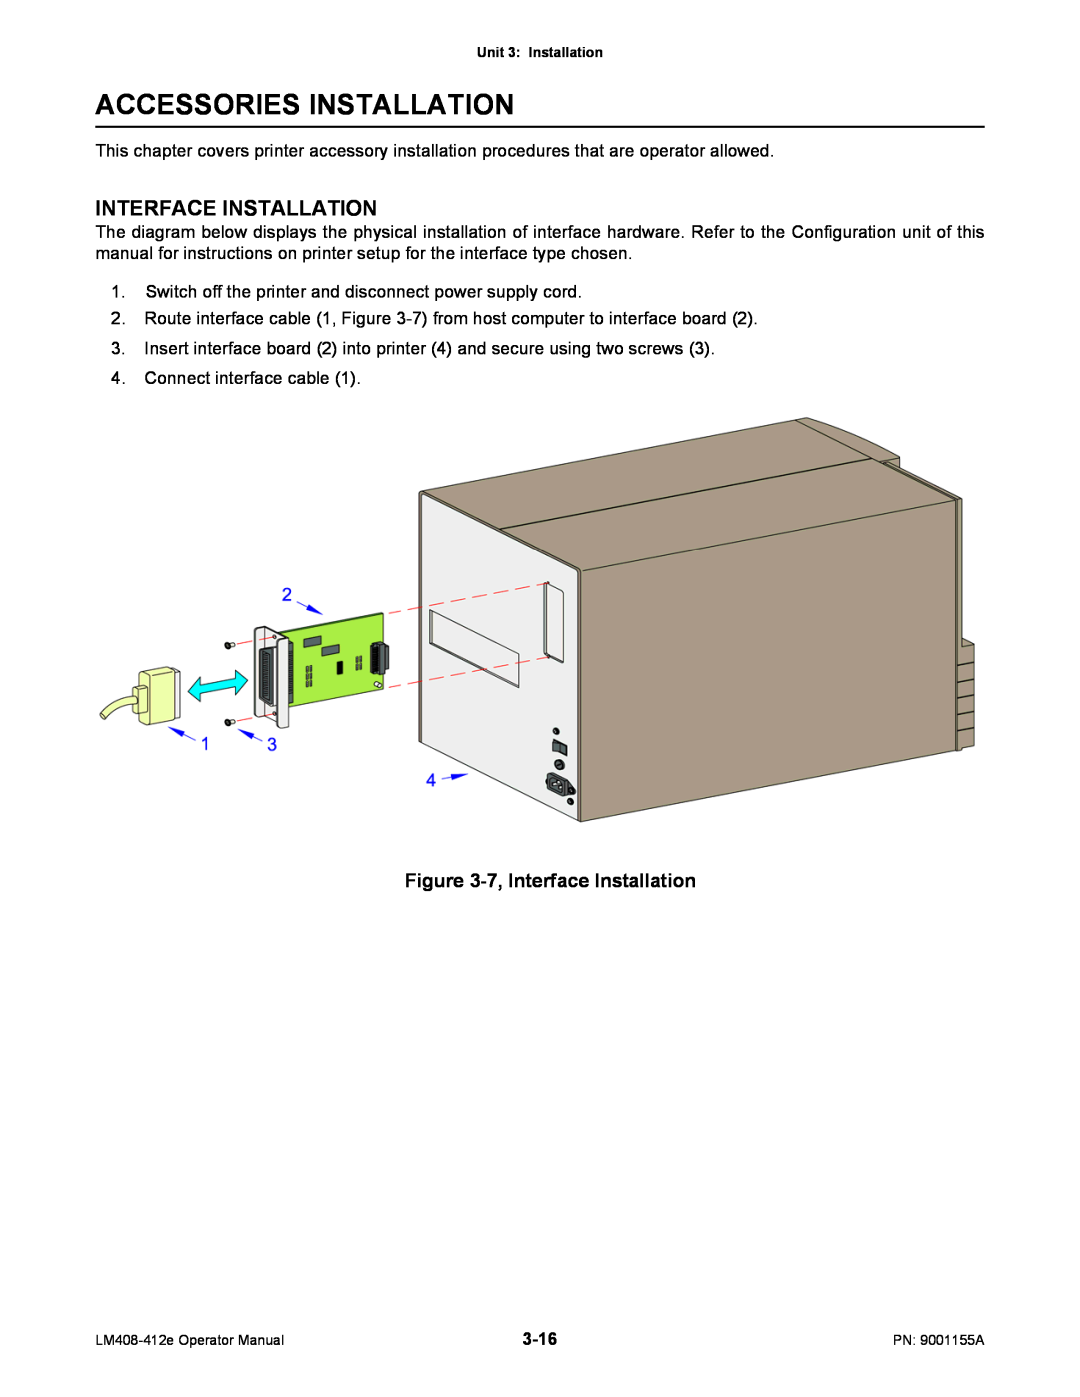 SATO LM408/412E manual Accessories Installation, Interface Installation 